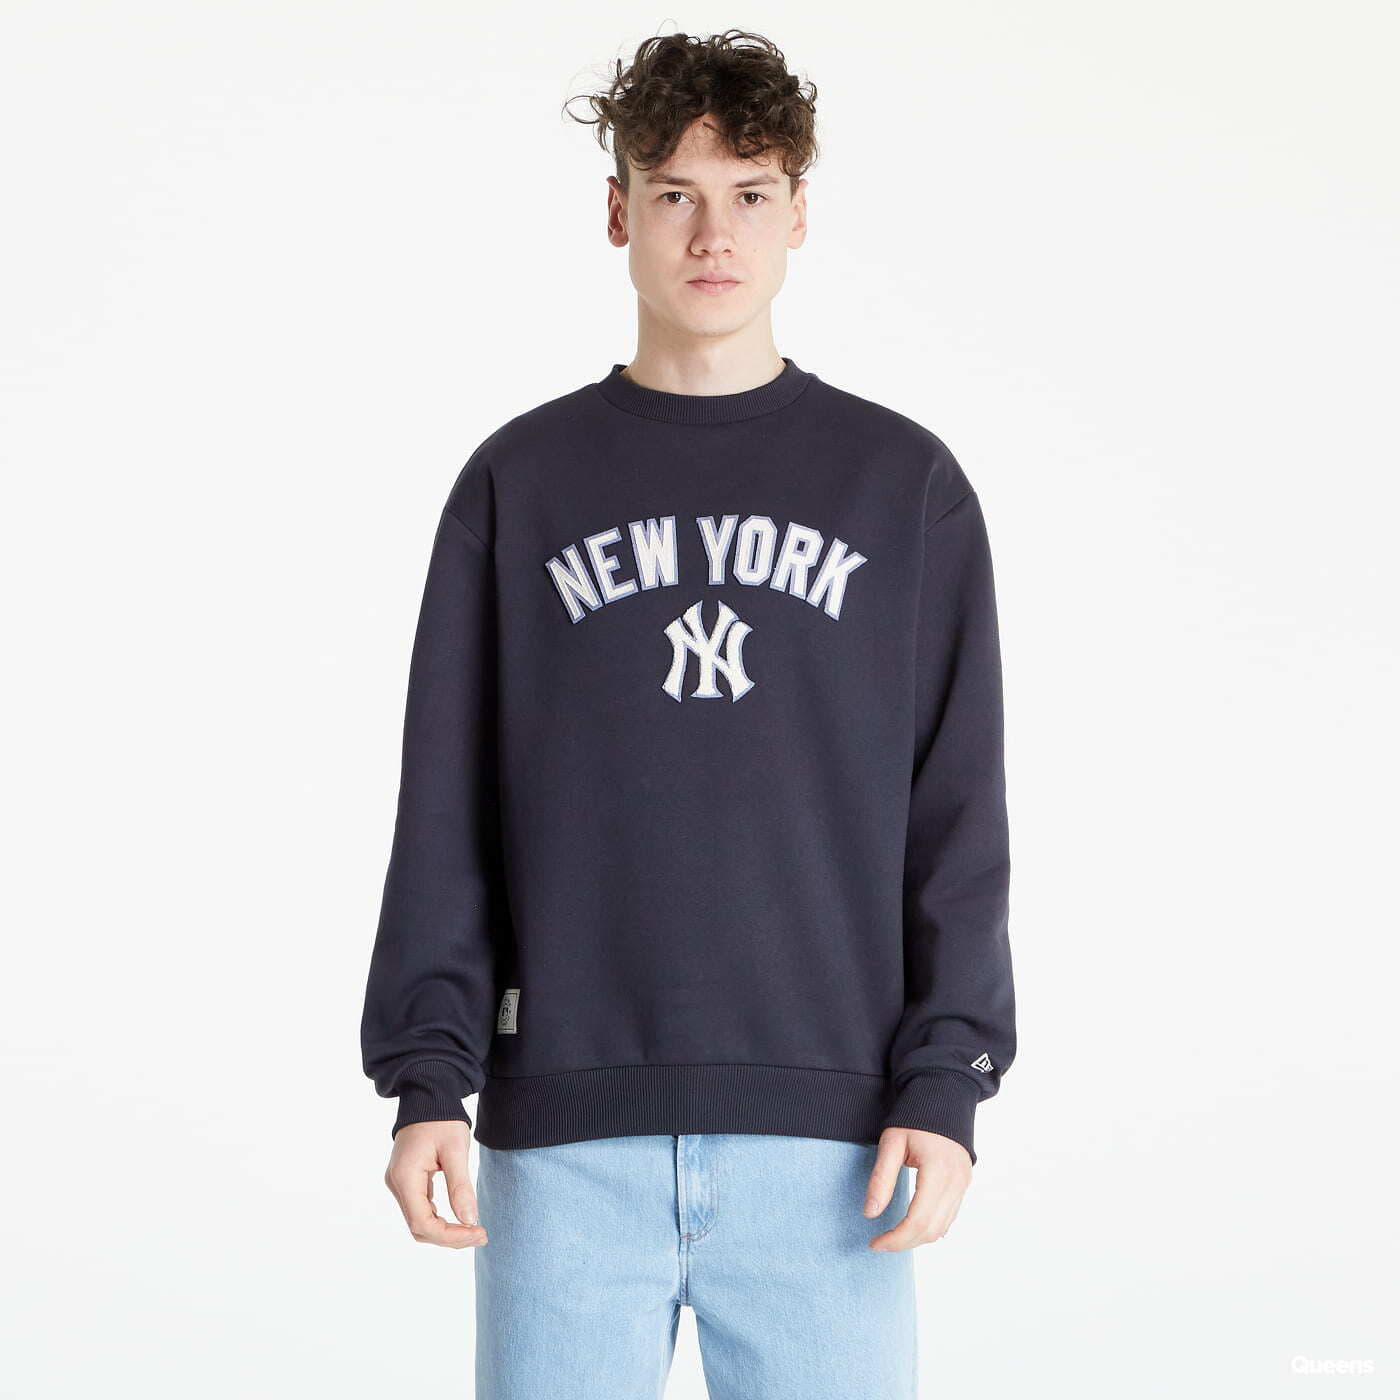 New York YANKEES MLB Crew New Era navy sweatshirt